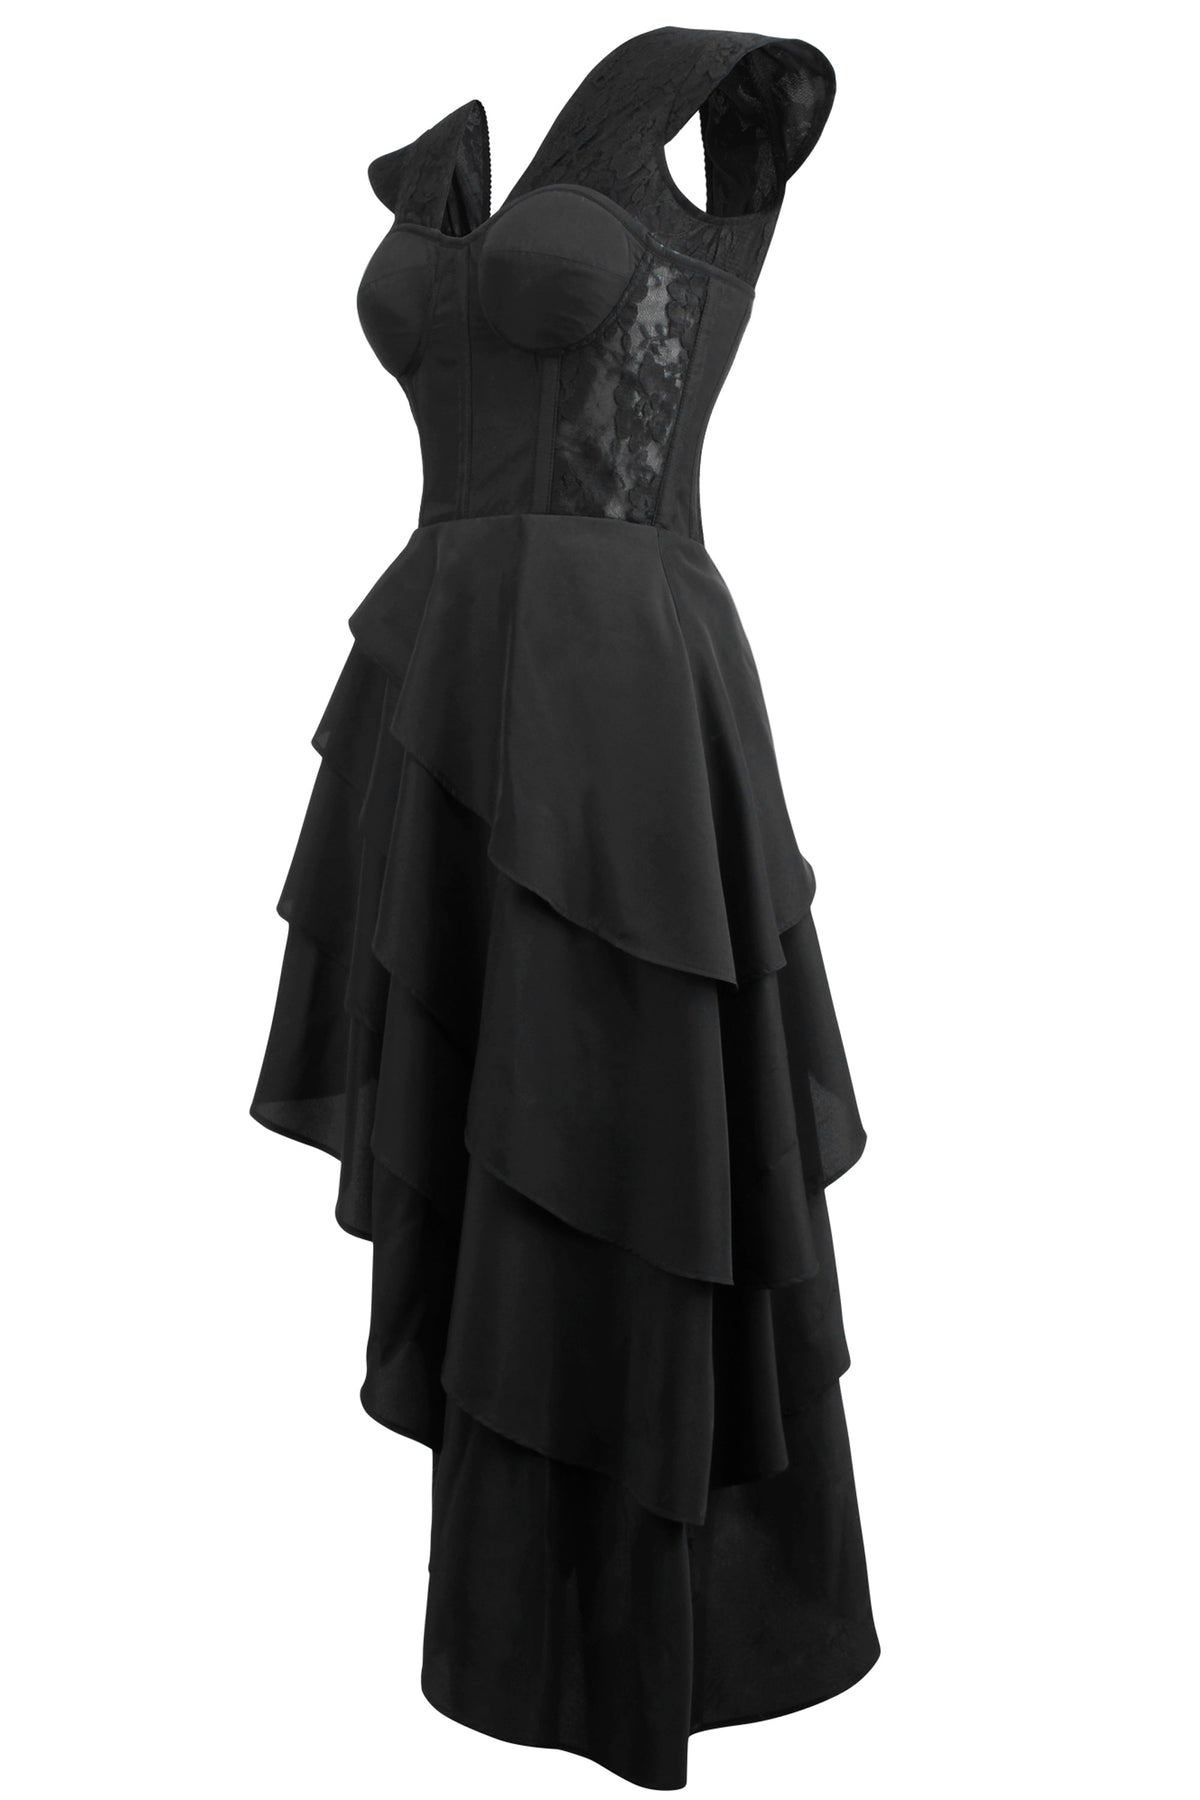 Little Black Corseted Dress